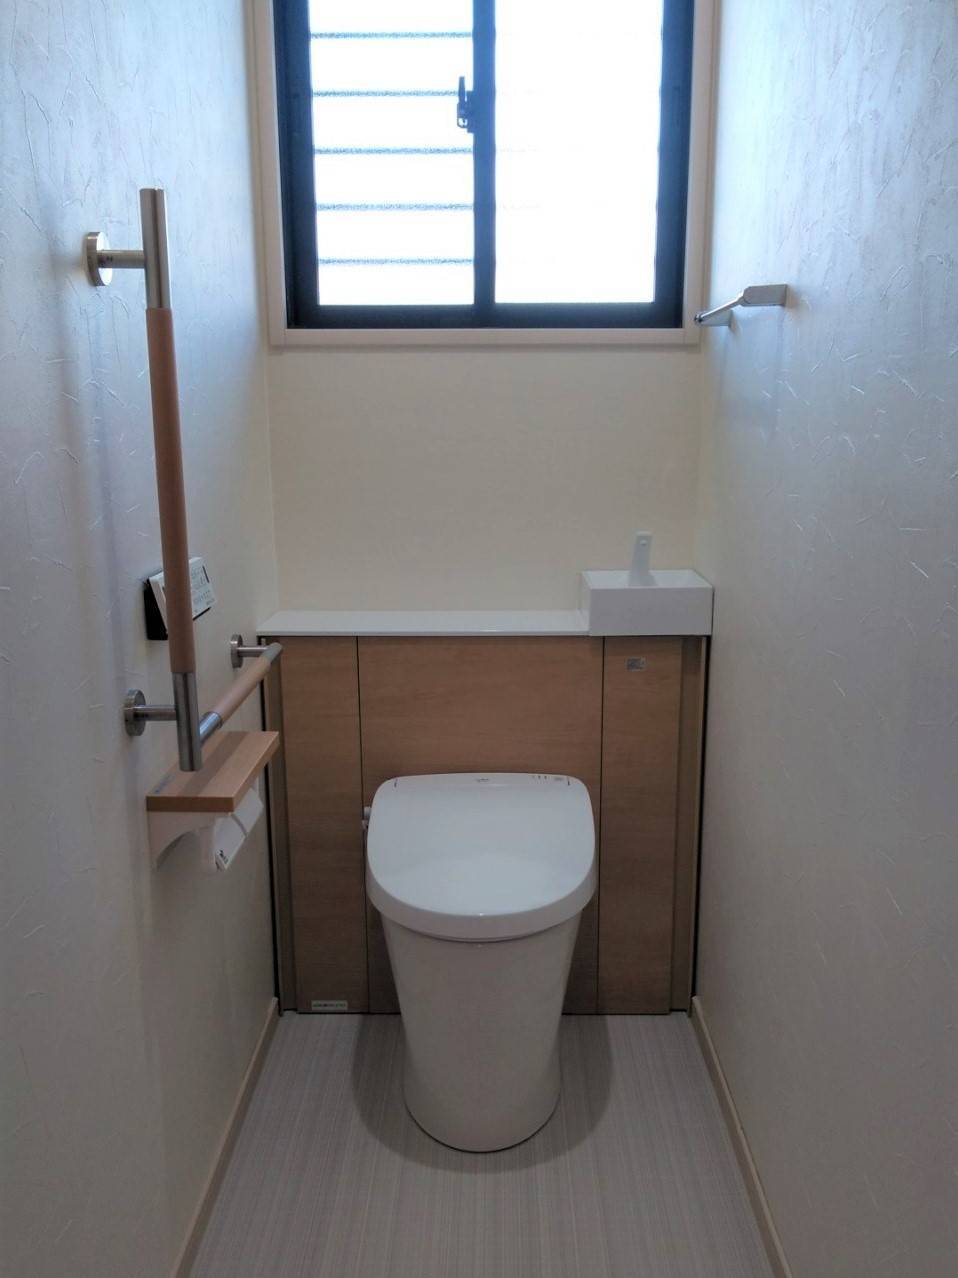 トイレのリフォームを行いました。 ウチヤマのブログ 写真2